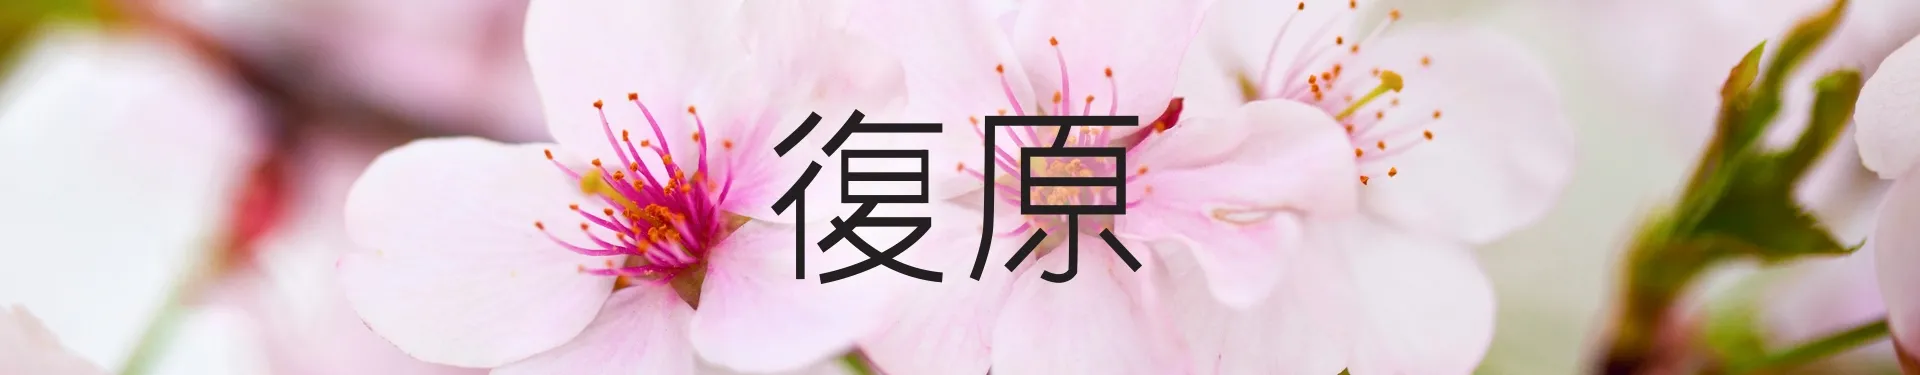 Kwiaty z napisem w innym języku